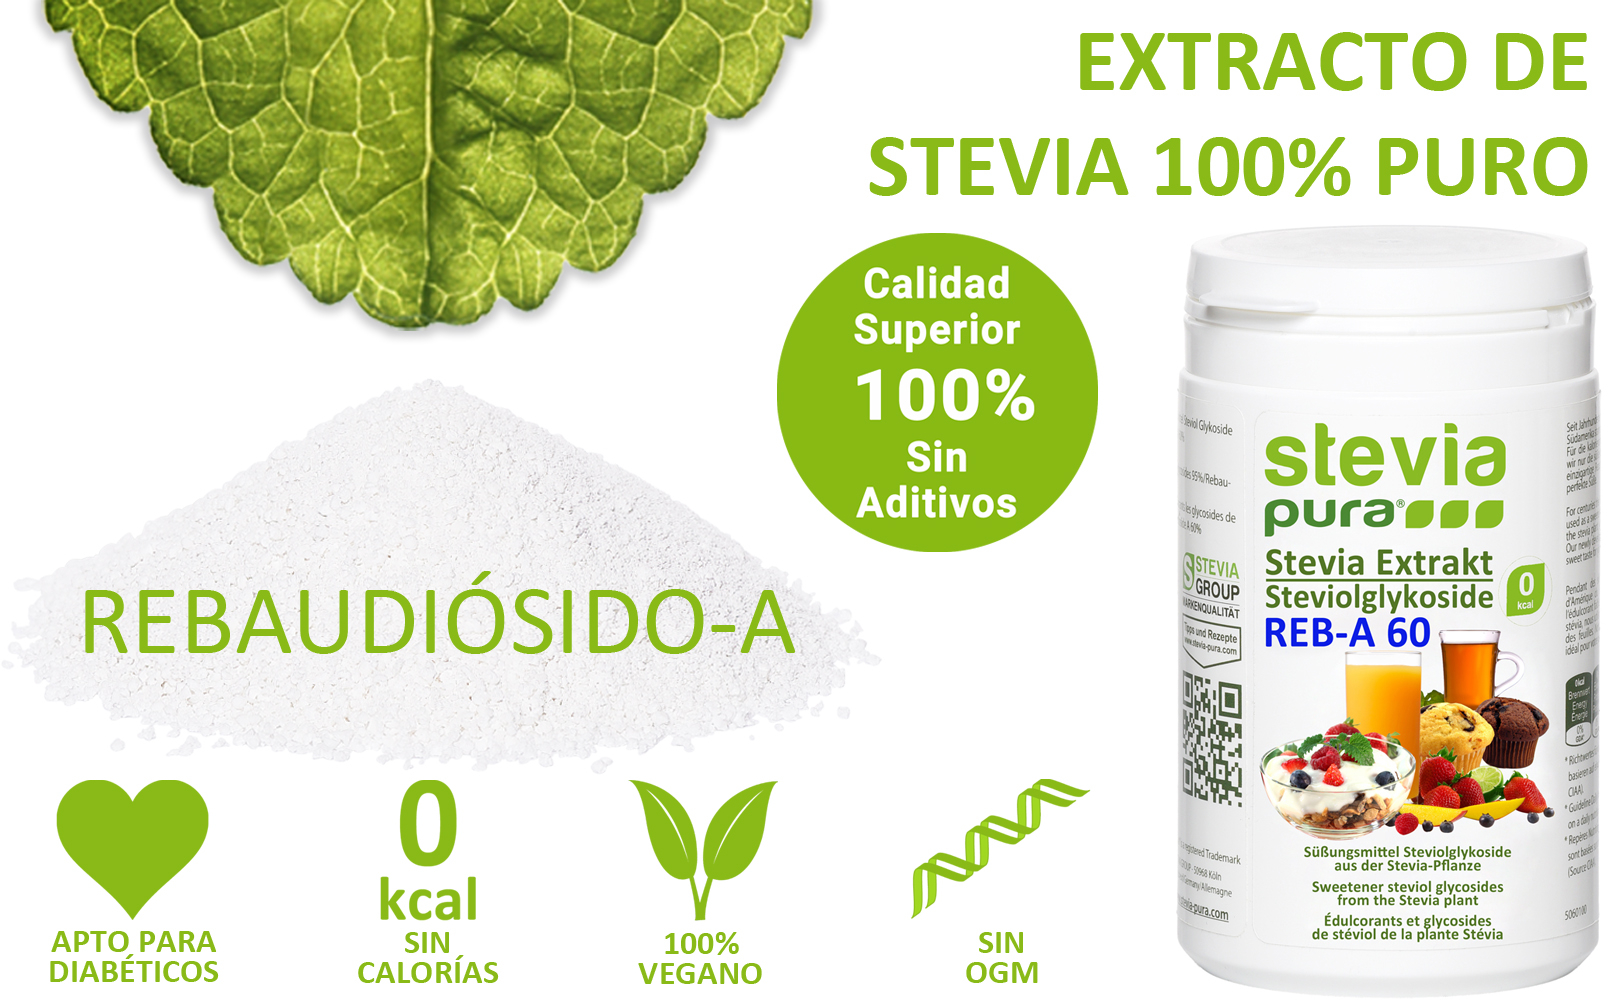 Comprar Extracto Puro de Stevia en Polvo Rebaudiósido-A 60%